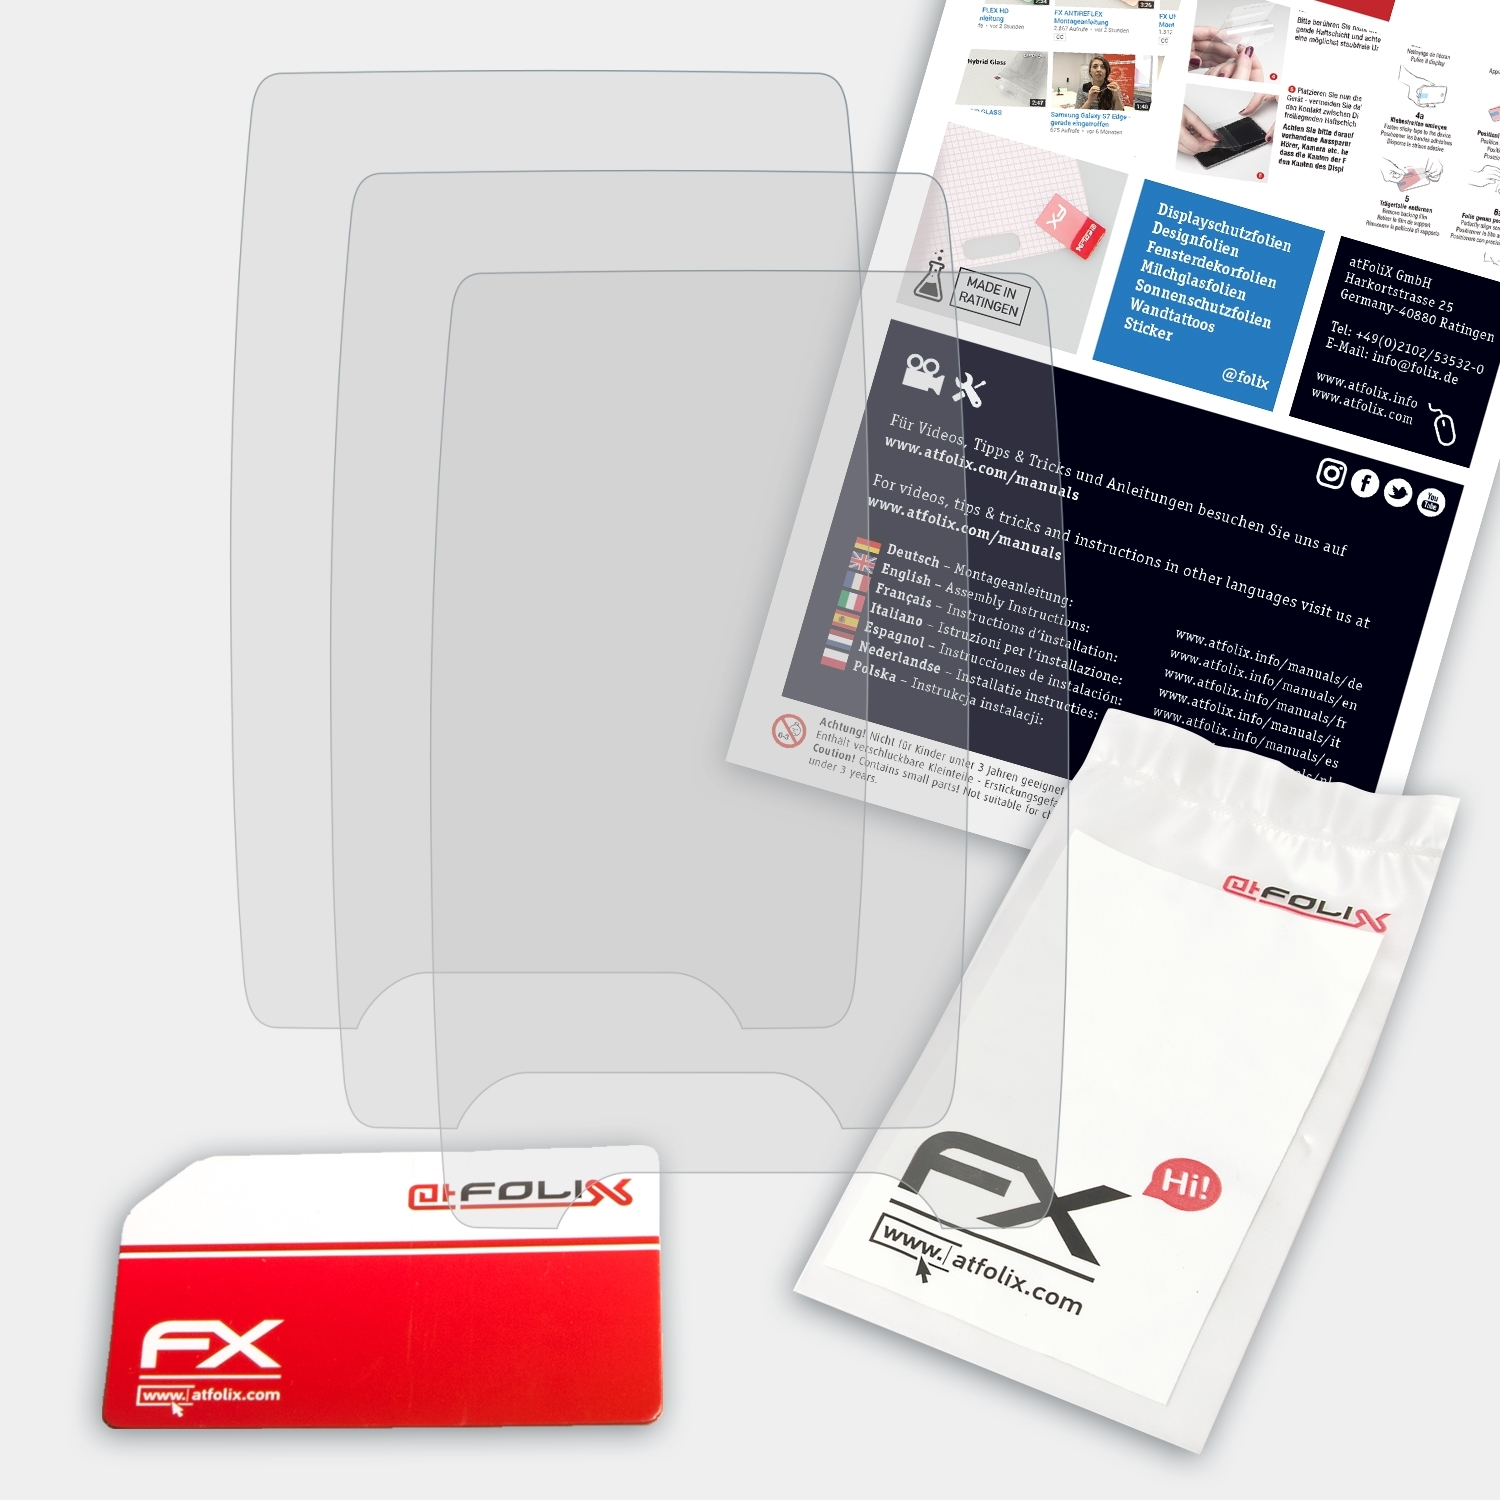 FX-Antireflex Garmin 3x 4dv) Striker Displayschutz(für ATFOLIX